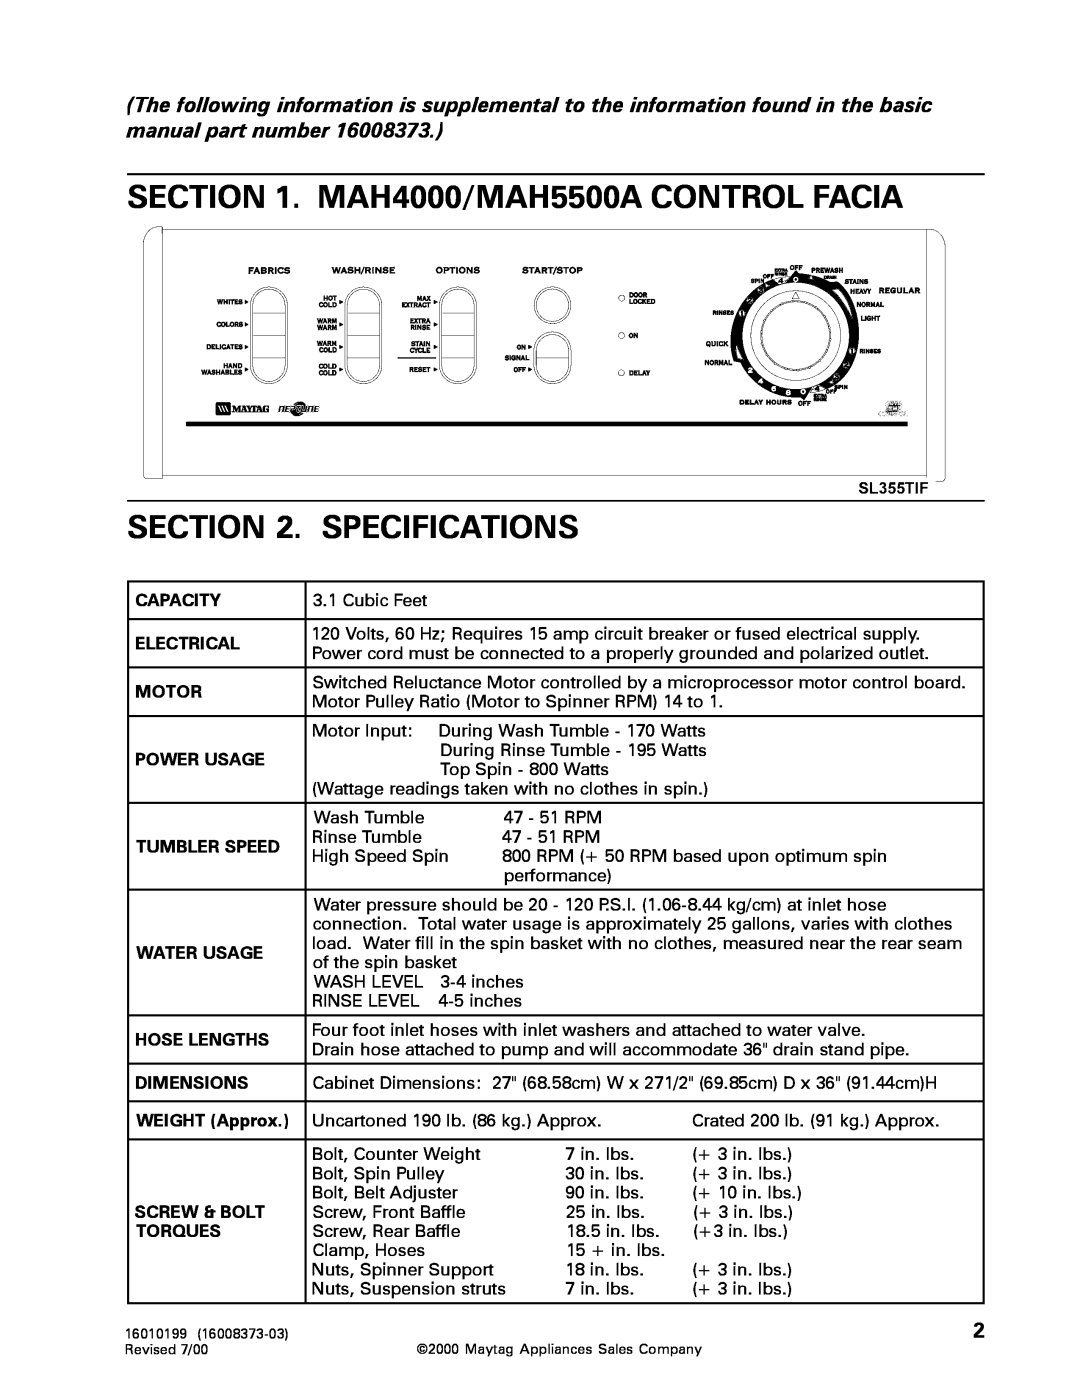 Whirlpool MAH3000 service manual MAH4000/MAH5500A CONTROL FACIA . SPECIFICATIONS 